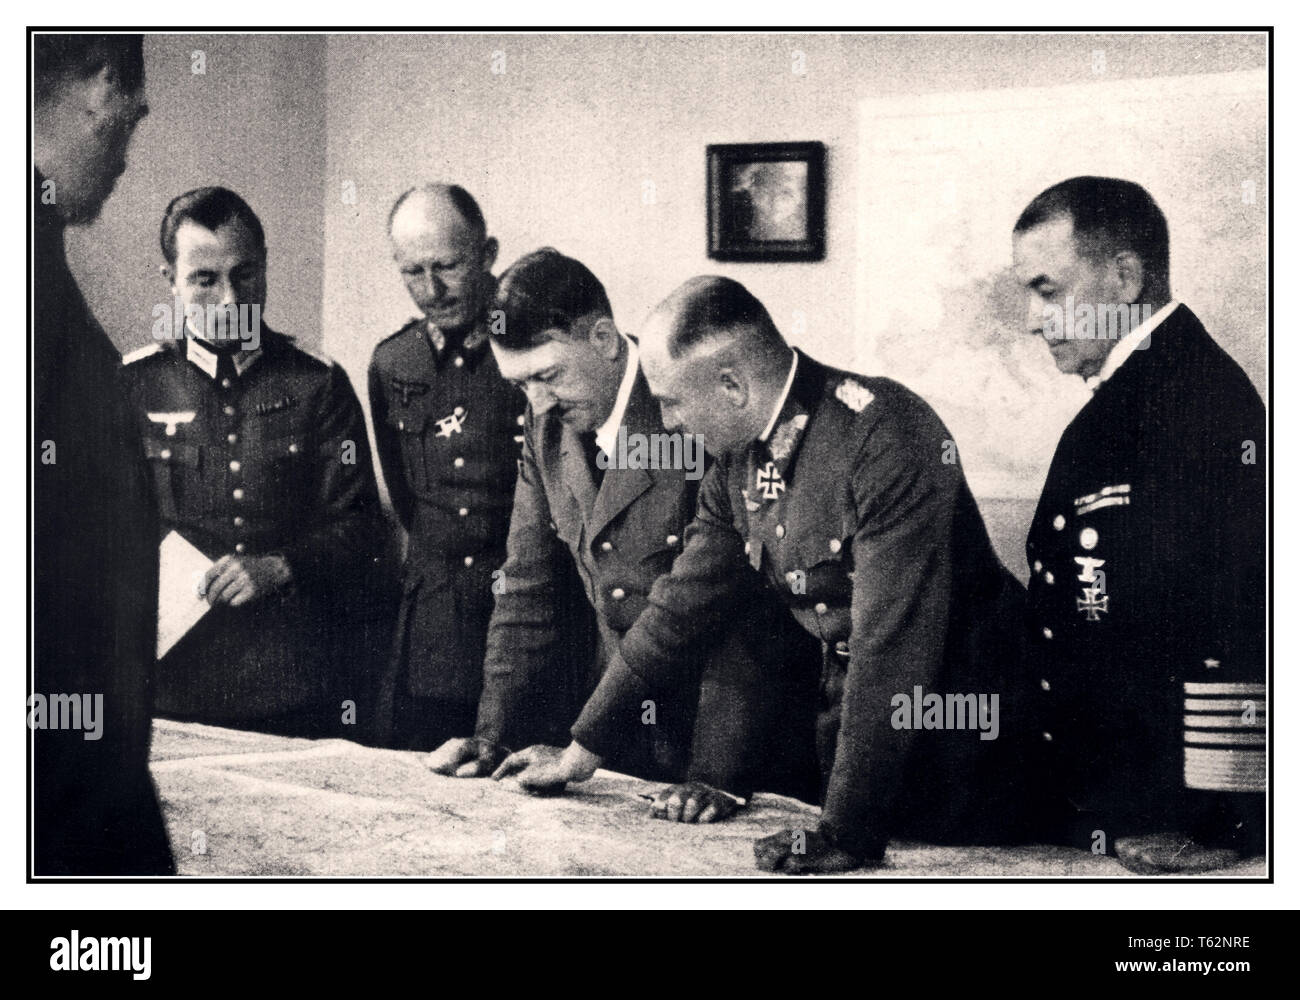 Adolf Hitler mit Karten in Bruly De Peche Ardennen WW2 Command Center, wie abgebildet auf der linken Seite von Adolf Hitler ist General Alfred Jodl, und auf der rechten Seite Feldmarschall Walter von Brauchitsch, Oberbefehlshaber der Armee. Neben ihm Admiral der Flotte Dr. Erich Raeder. 1944 Stockfoto